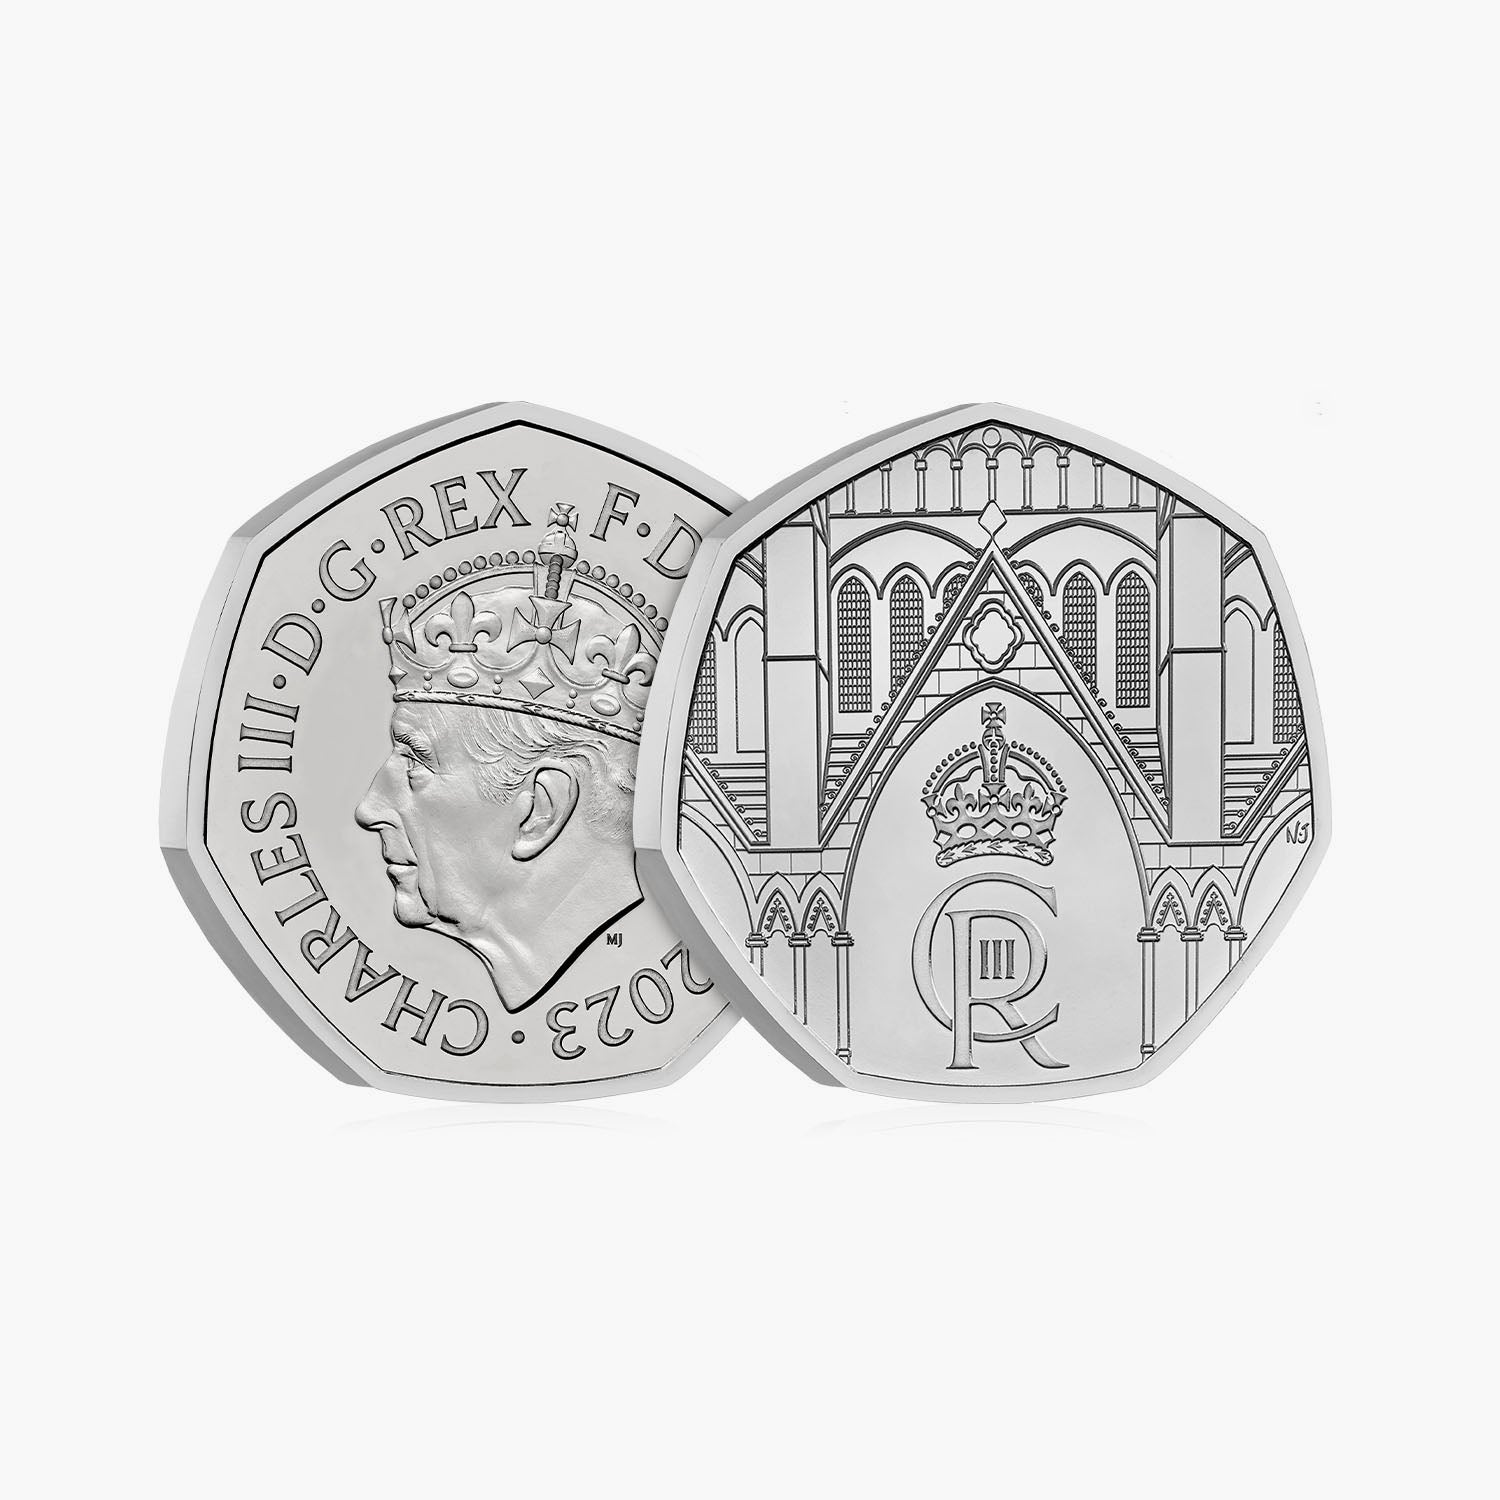 Le Couronnement de Sa Majesté le Roi Charles III Royaume-Uni 50p Brilliant Uncirculated Coin